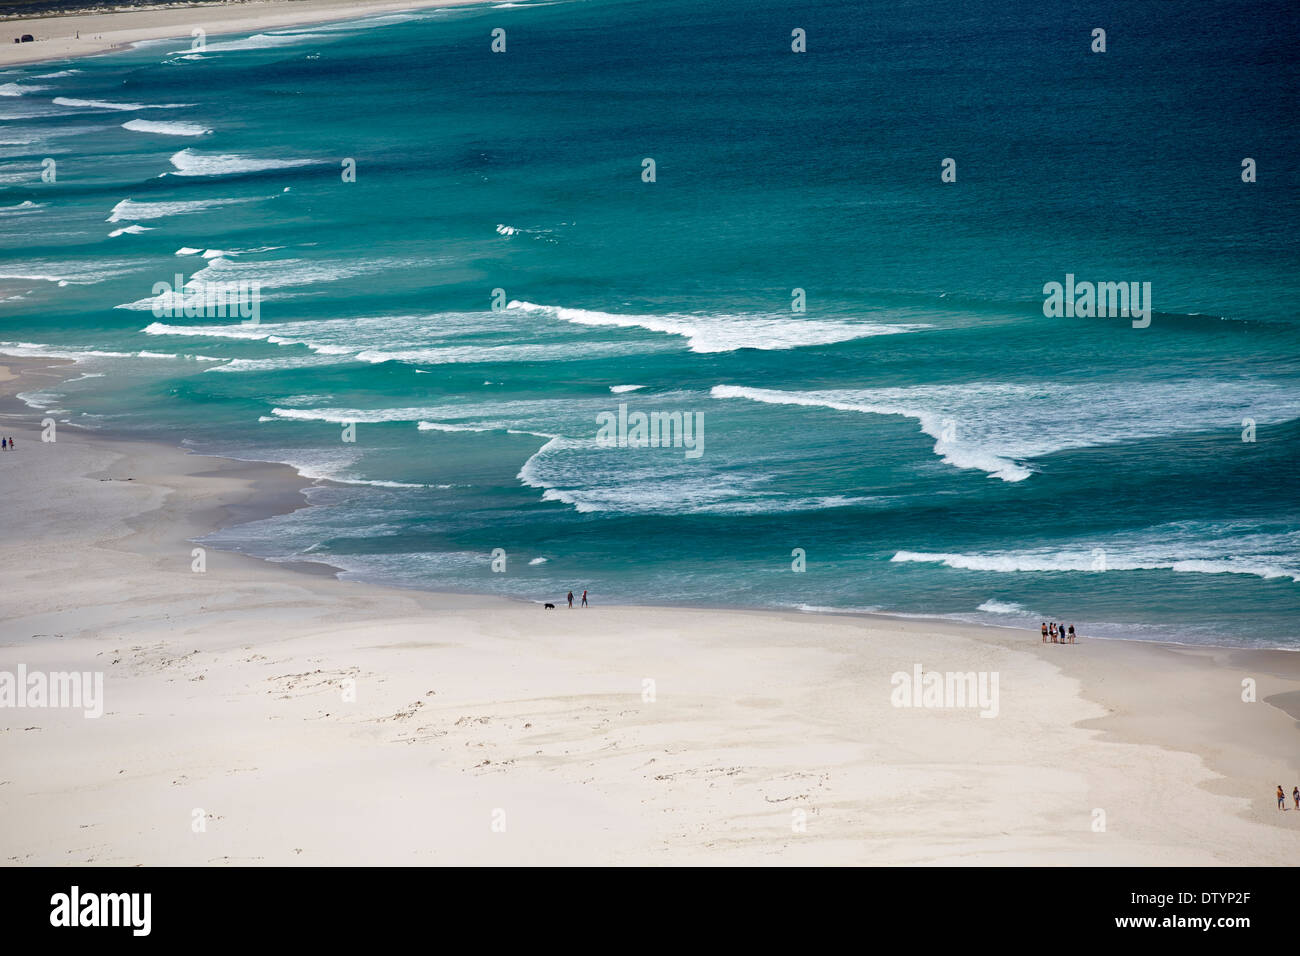 Le fracas des vagues de l'océan sur la plage Banque D'Images